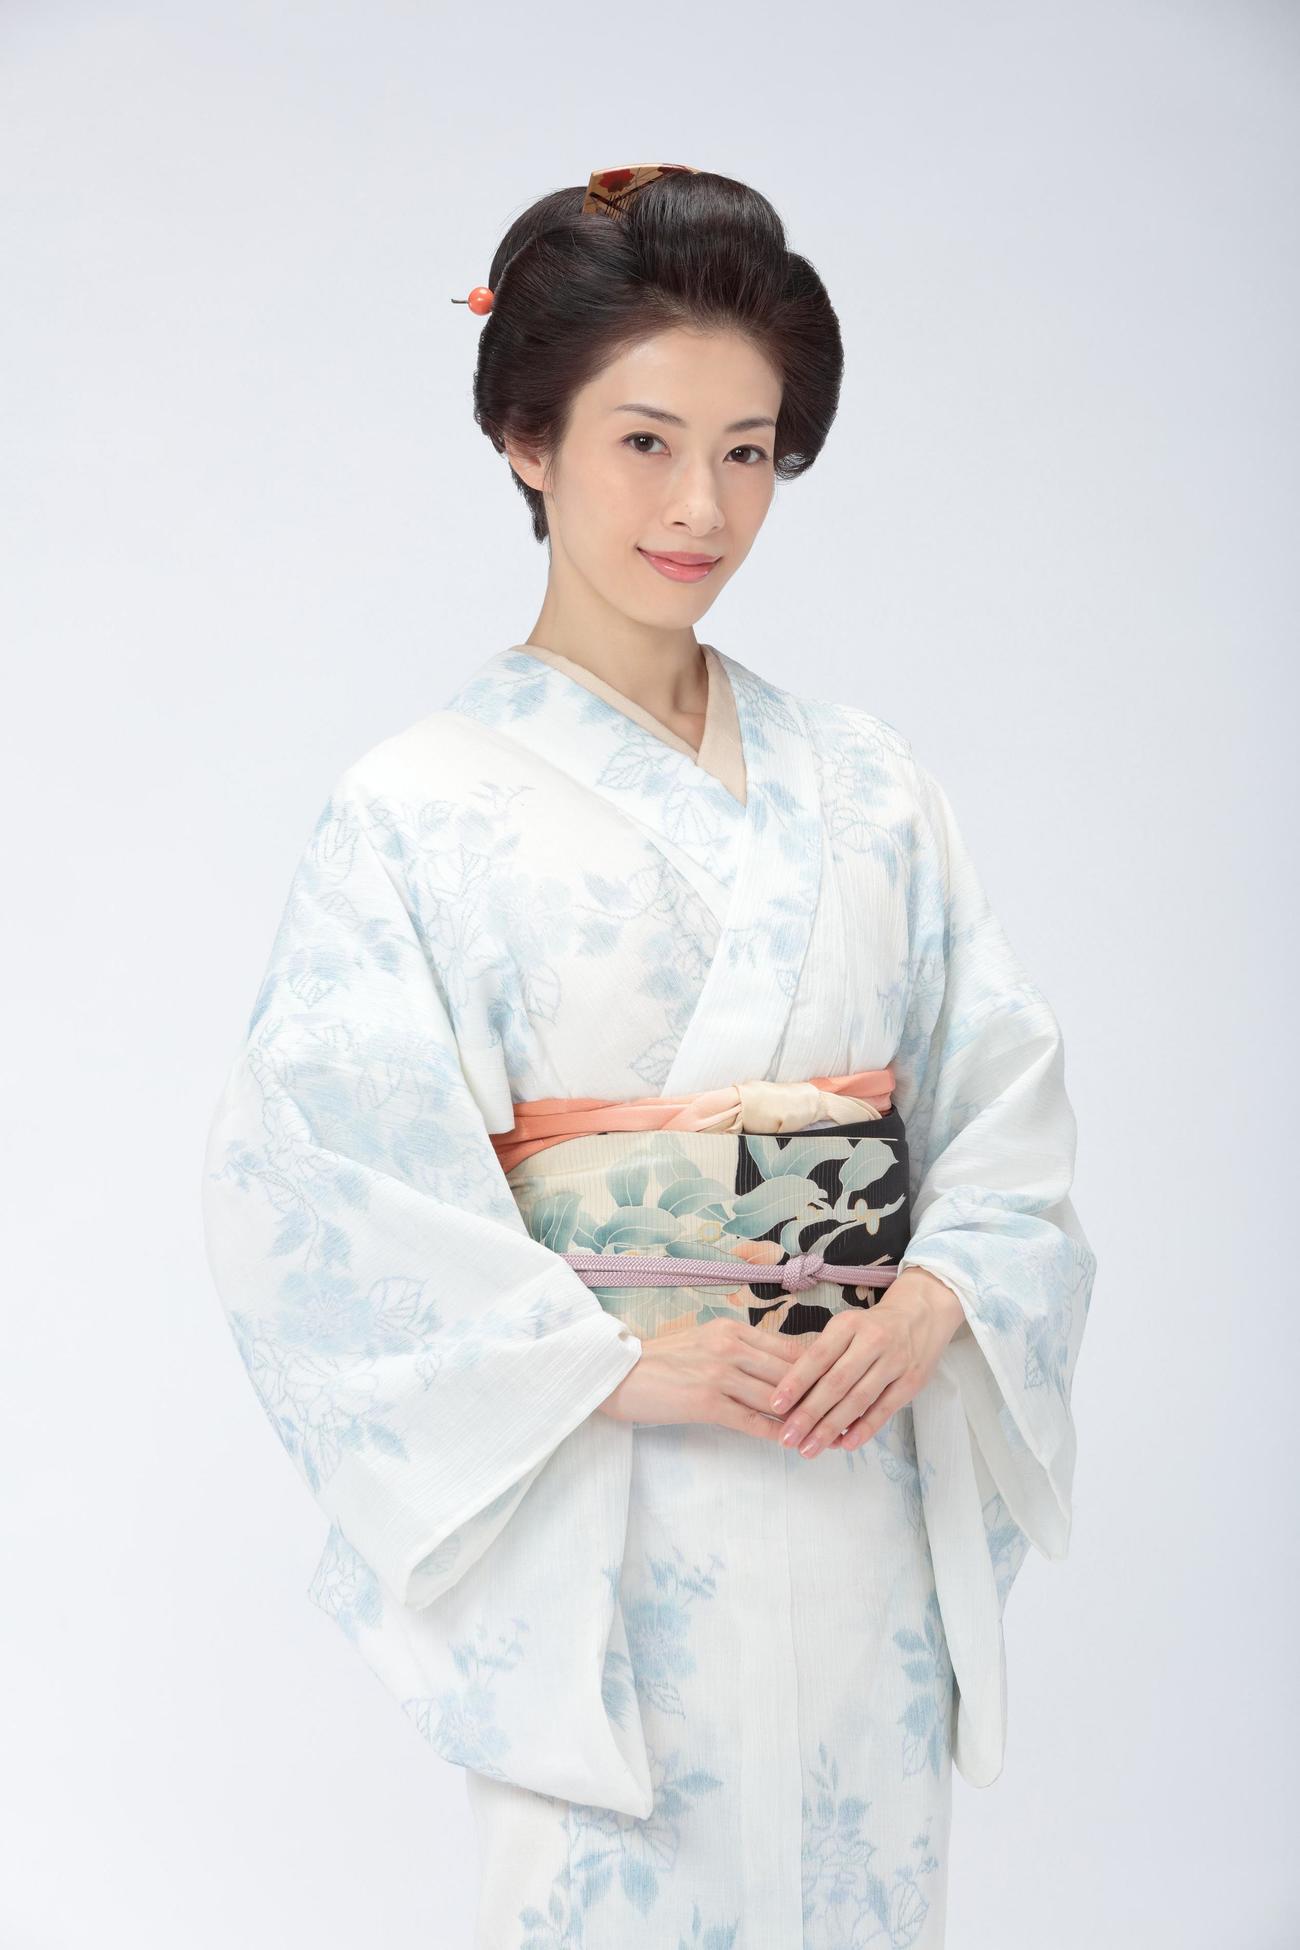 新派出身の女優役で朝ドラに初出演する明日海りお（NHK提供）